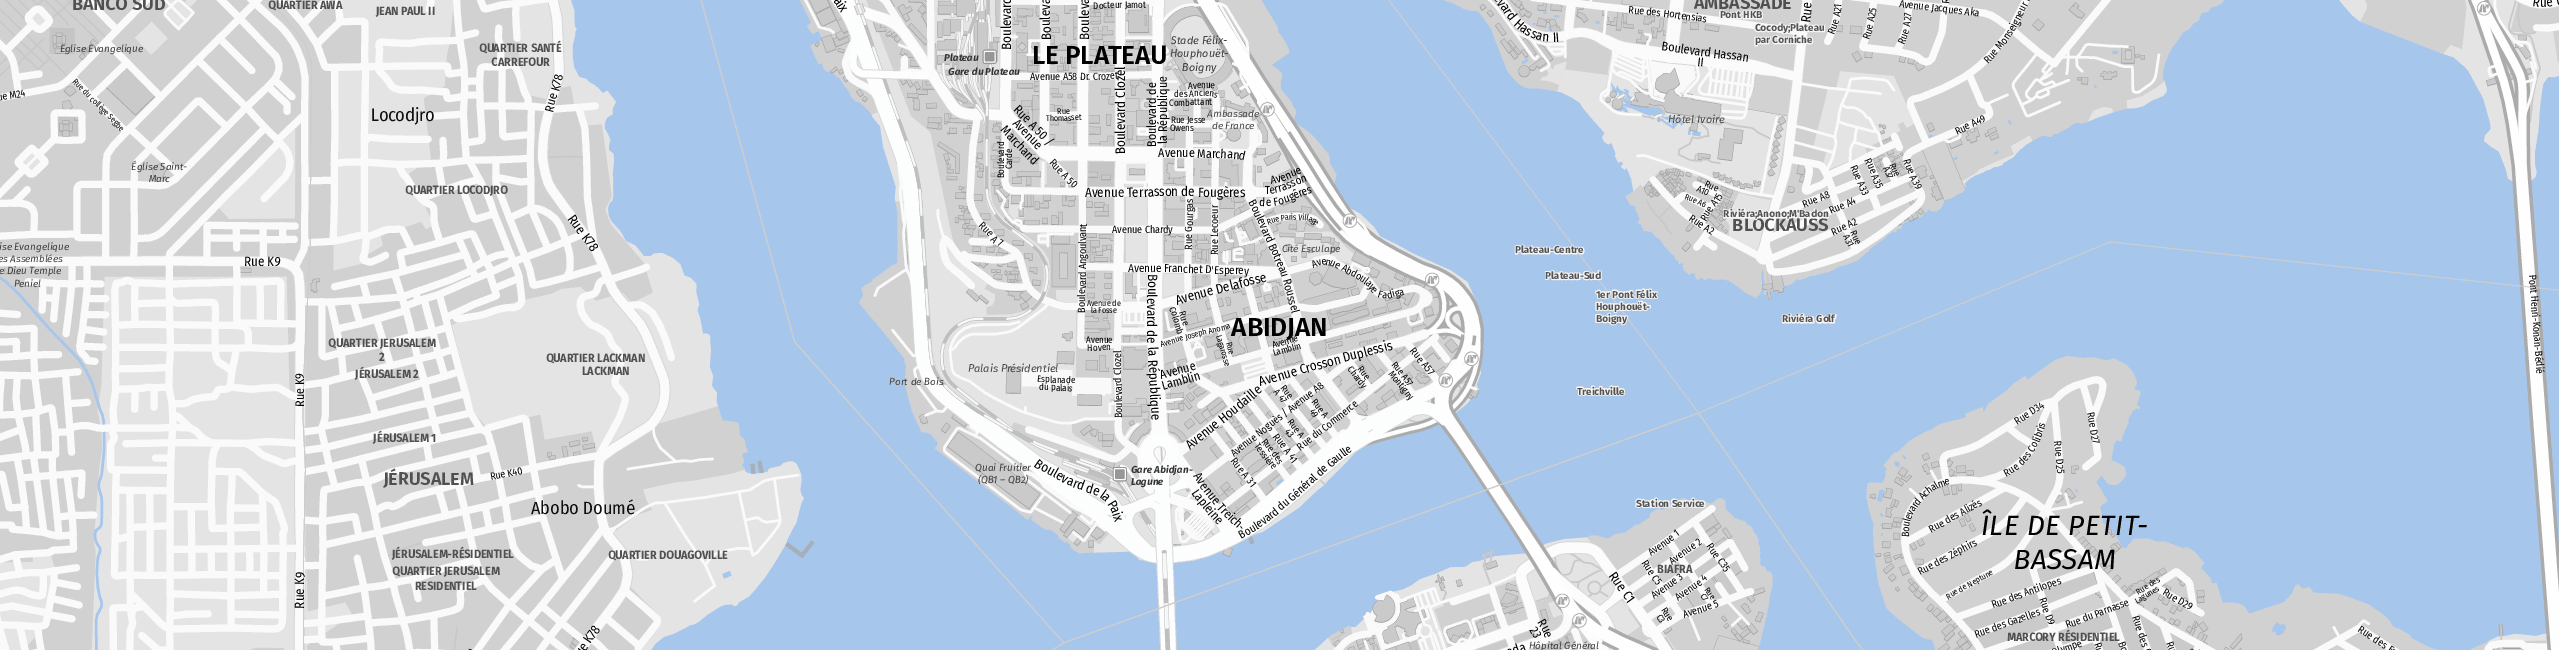 Stadtplan Abidjan zum Downloaden.